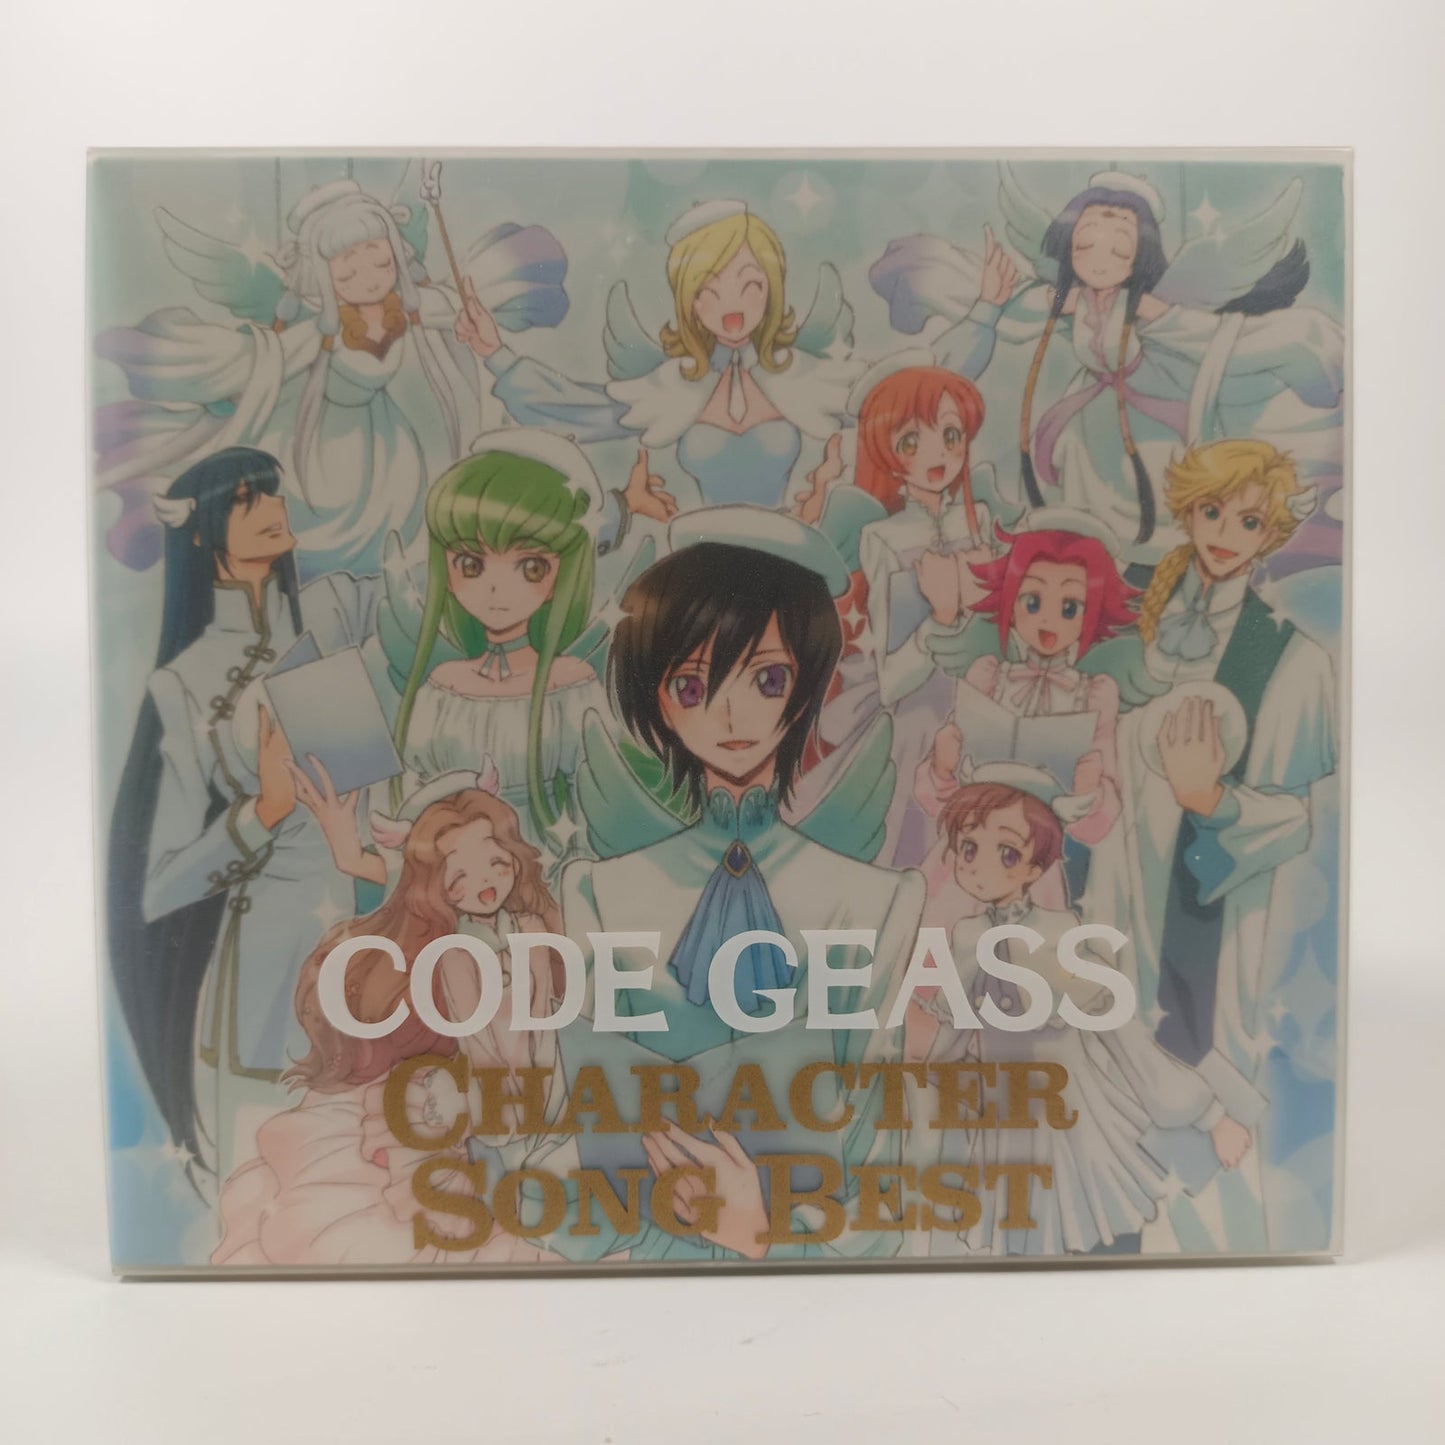 Code Geass Character Song Best